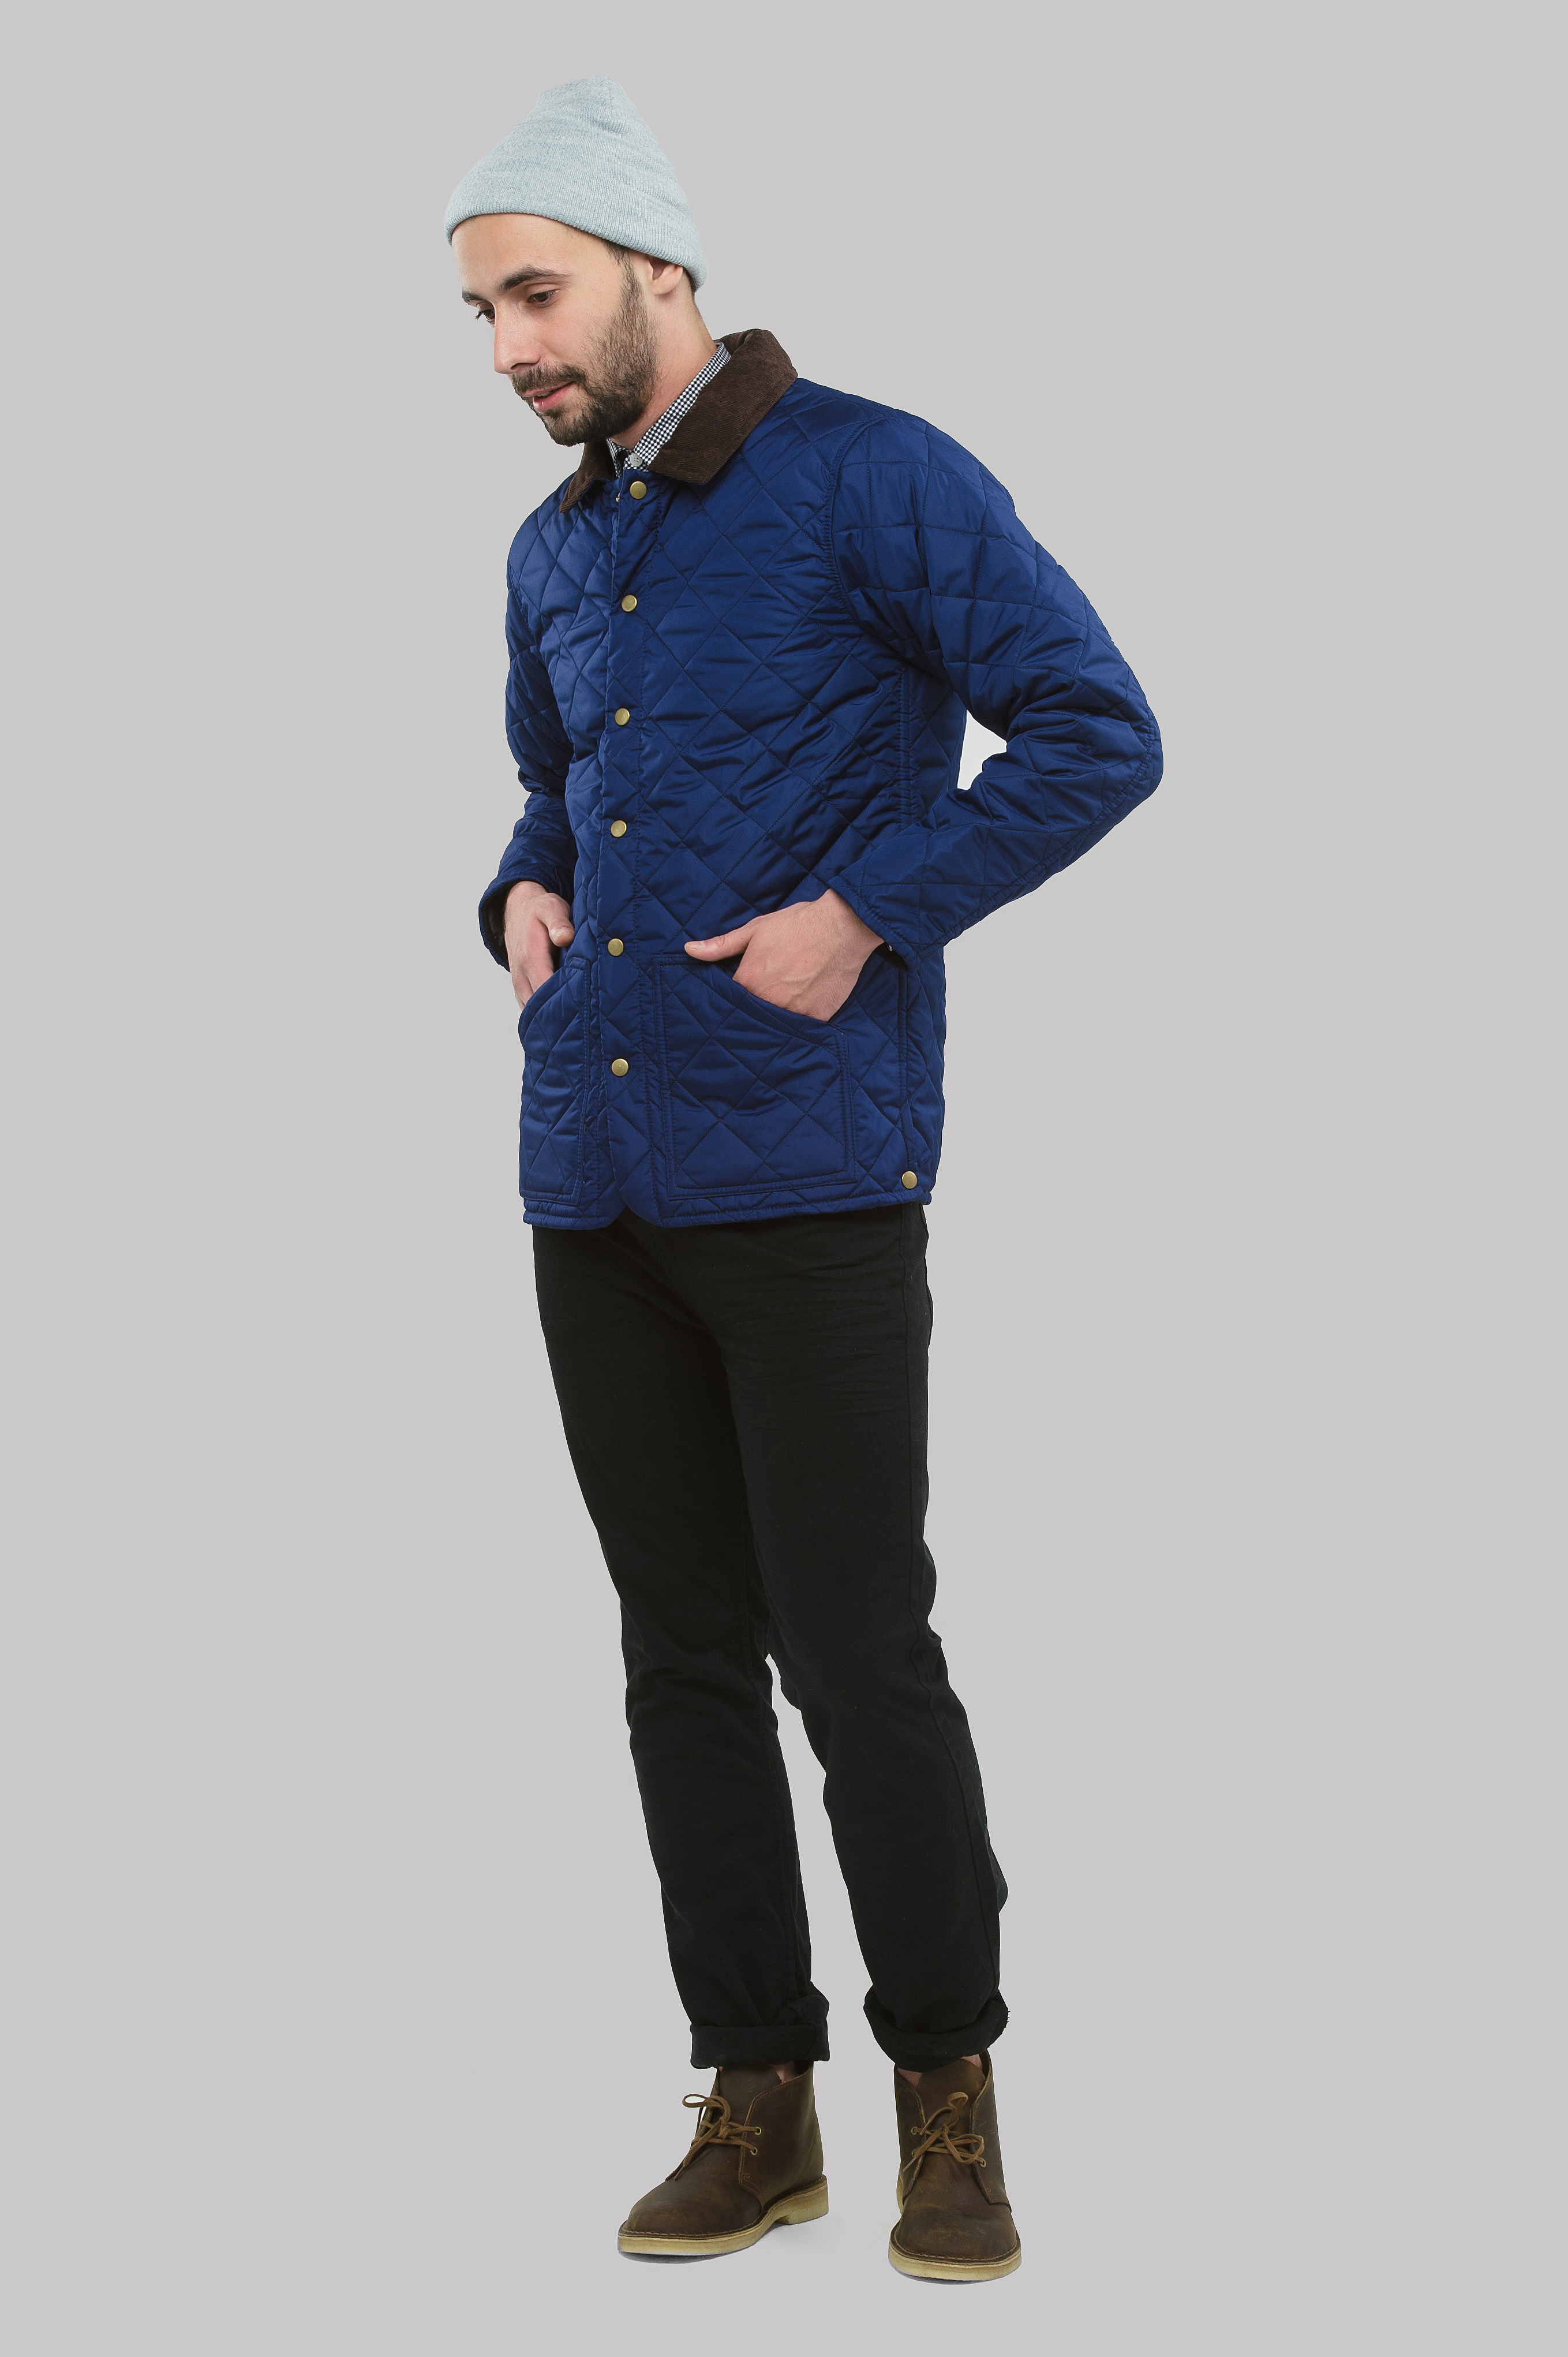 Куртка стеганая Сэр 2016 т-синяя